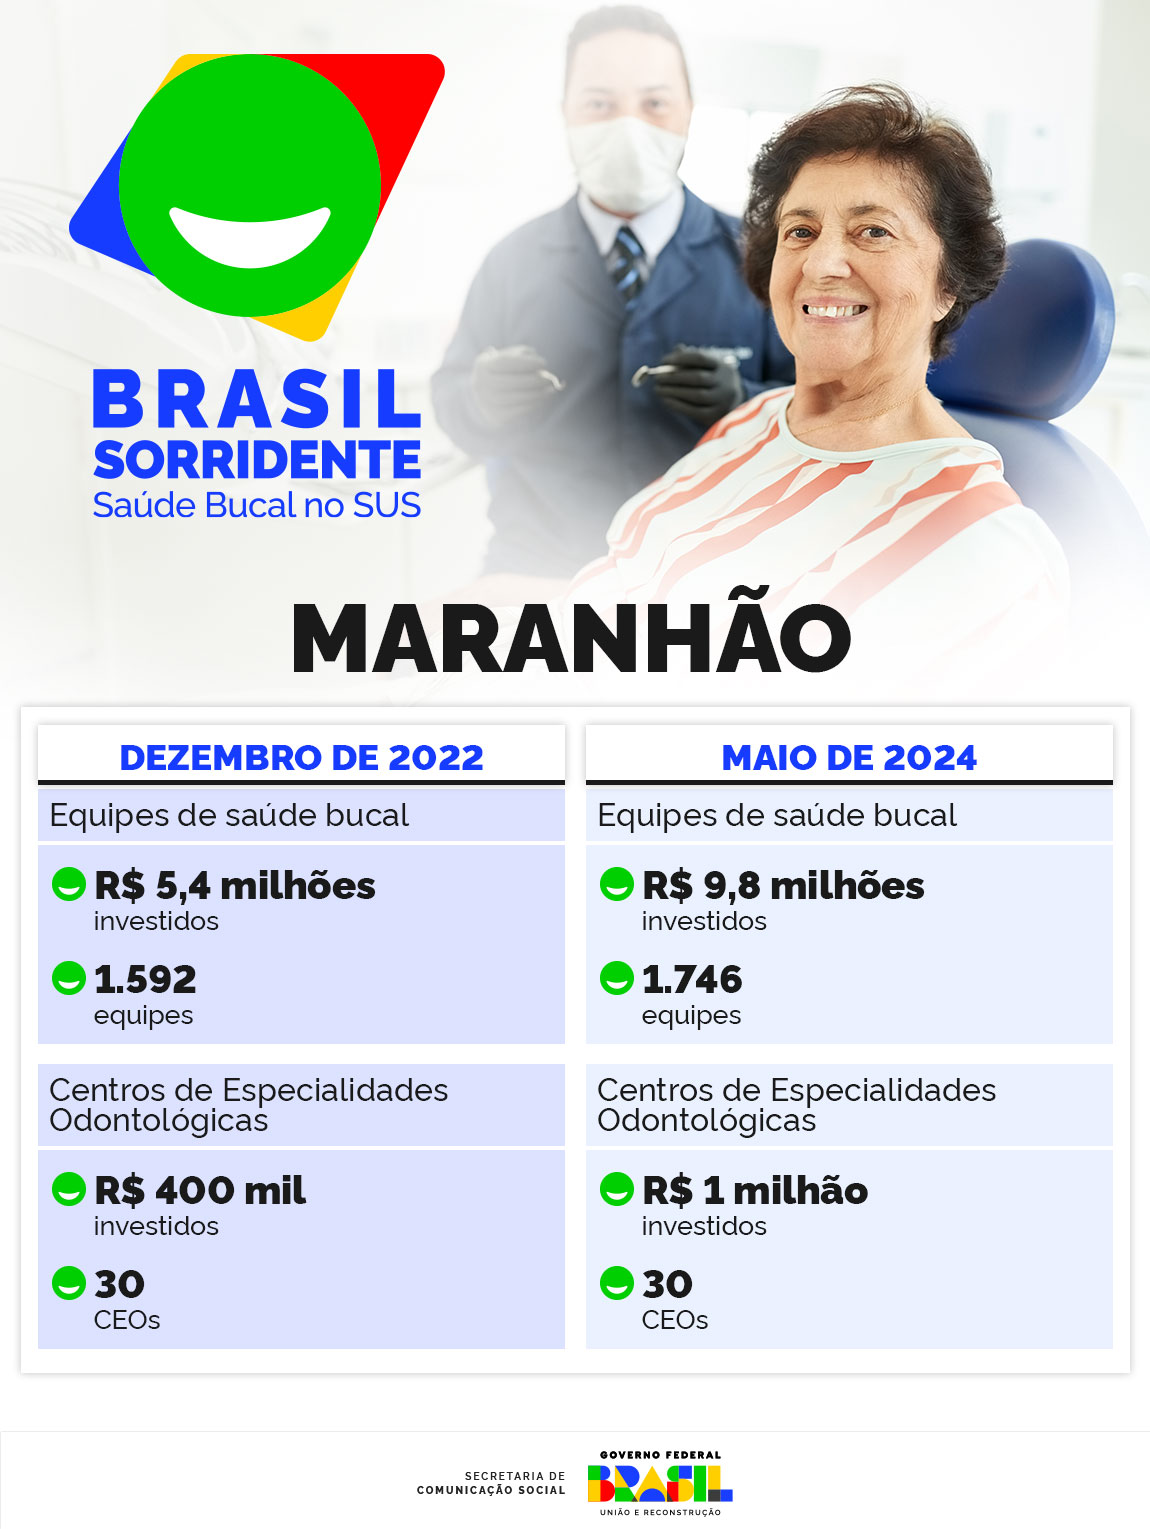 INFOGRÁFICO 1 | O Brasil Sorridente no Maranhão